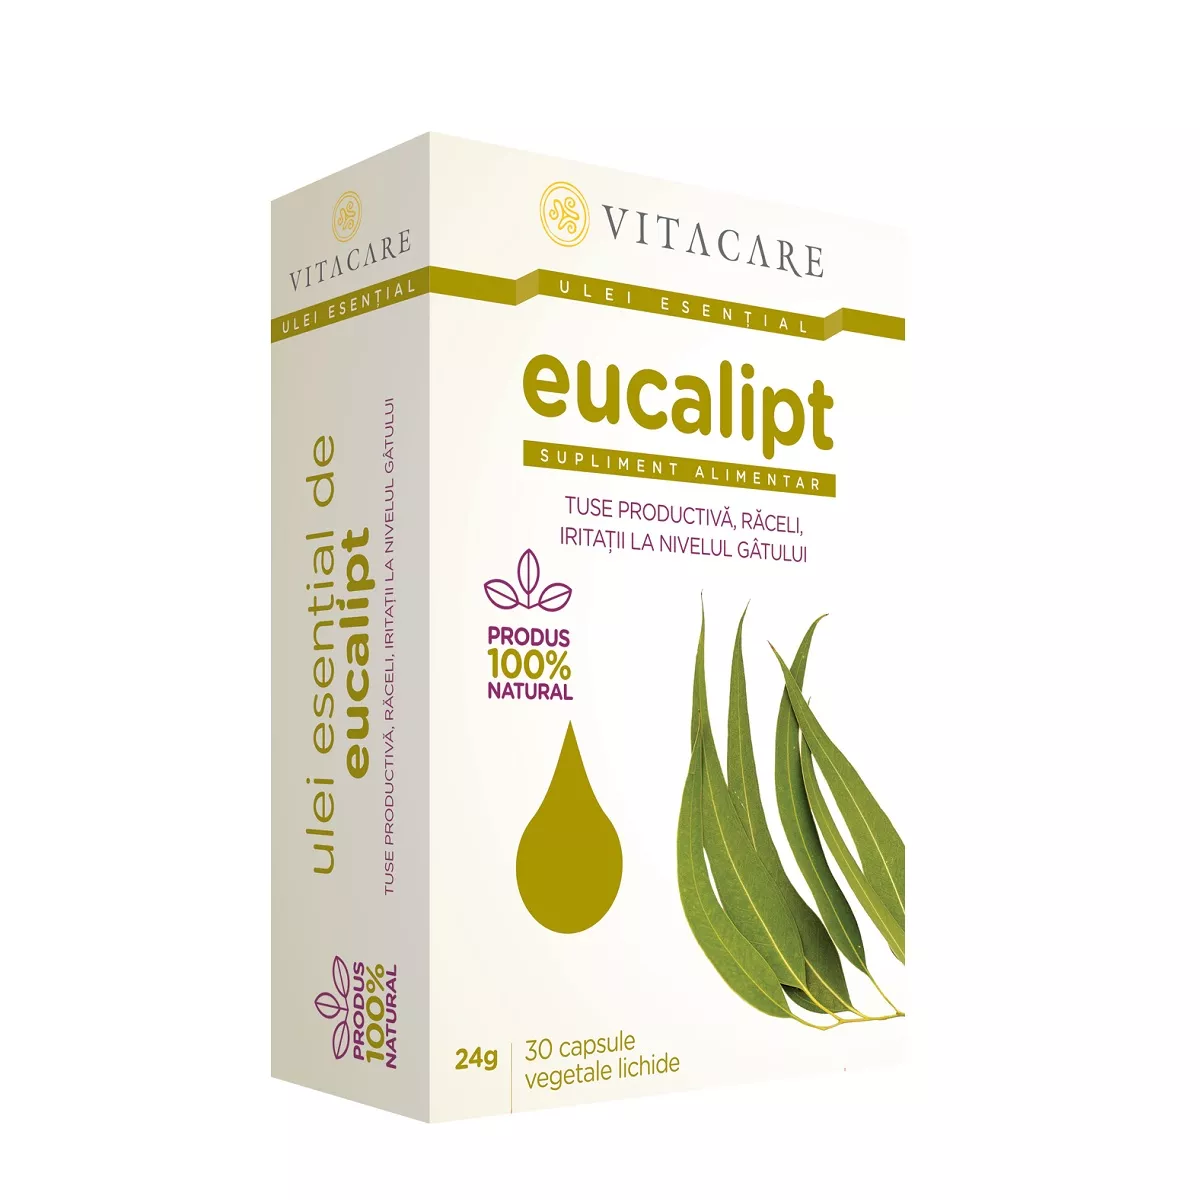 Ulei esential eucalipt, 30 capsule, Vitacare